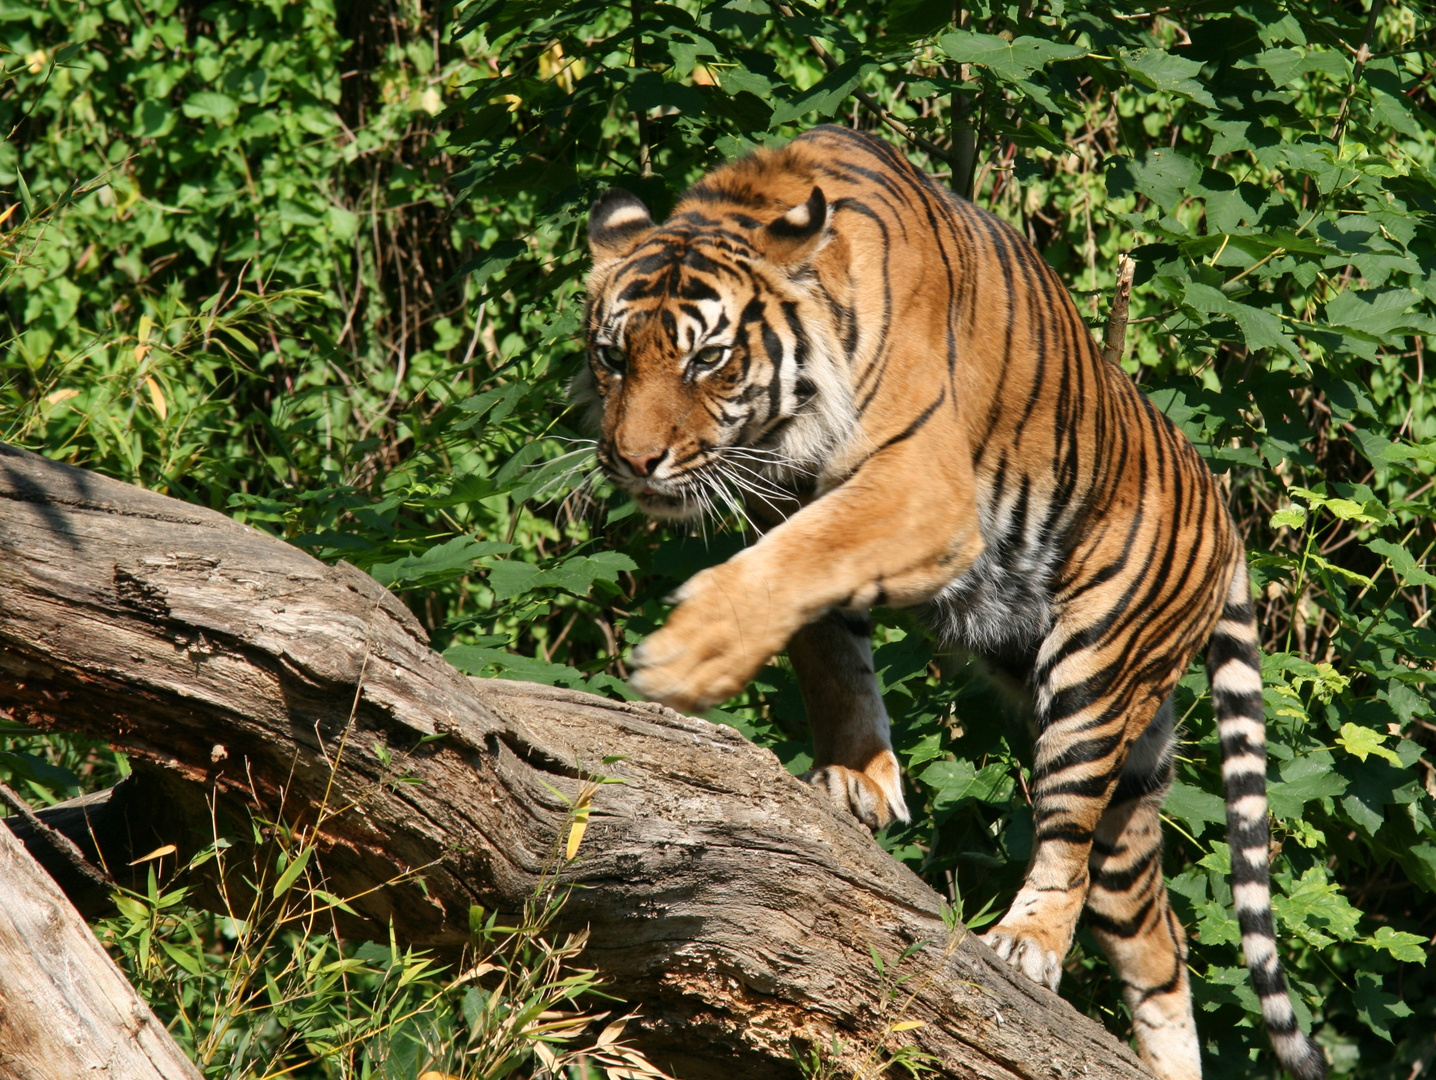 Tiger Auf Baum